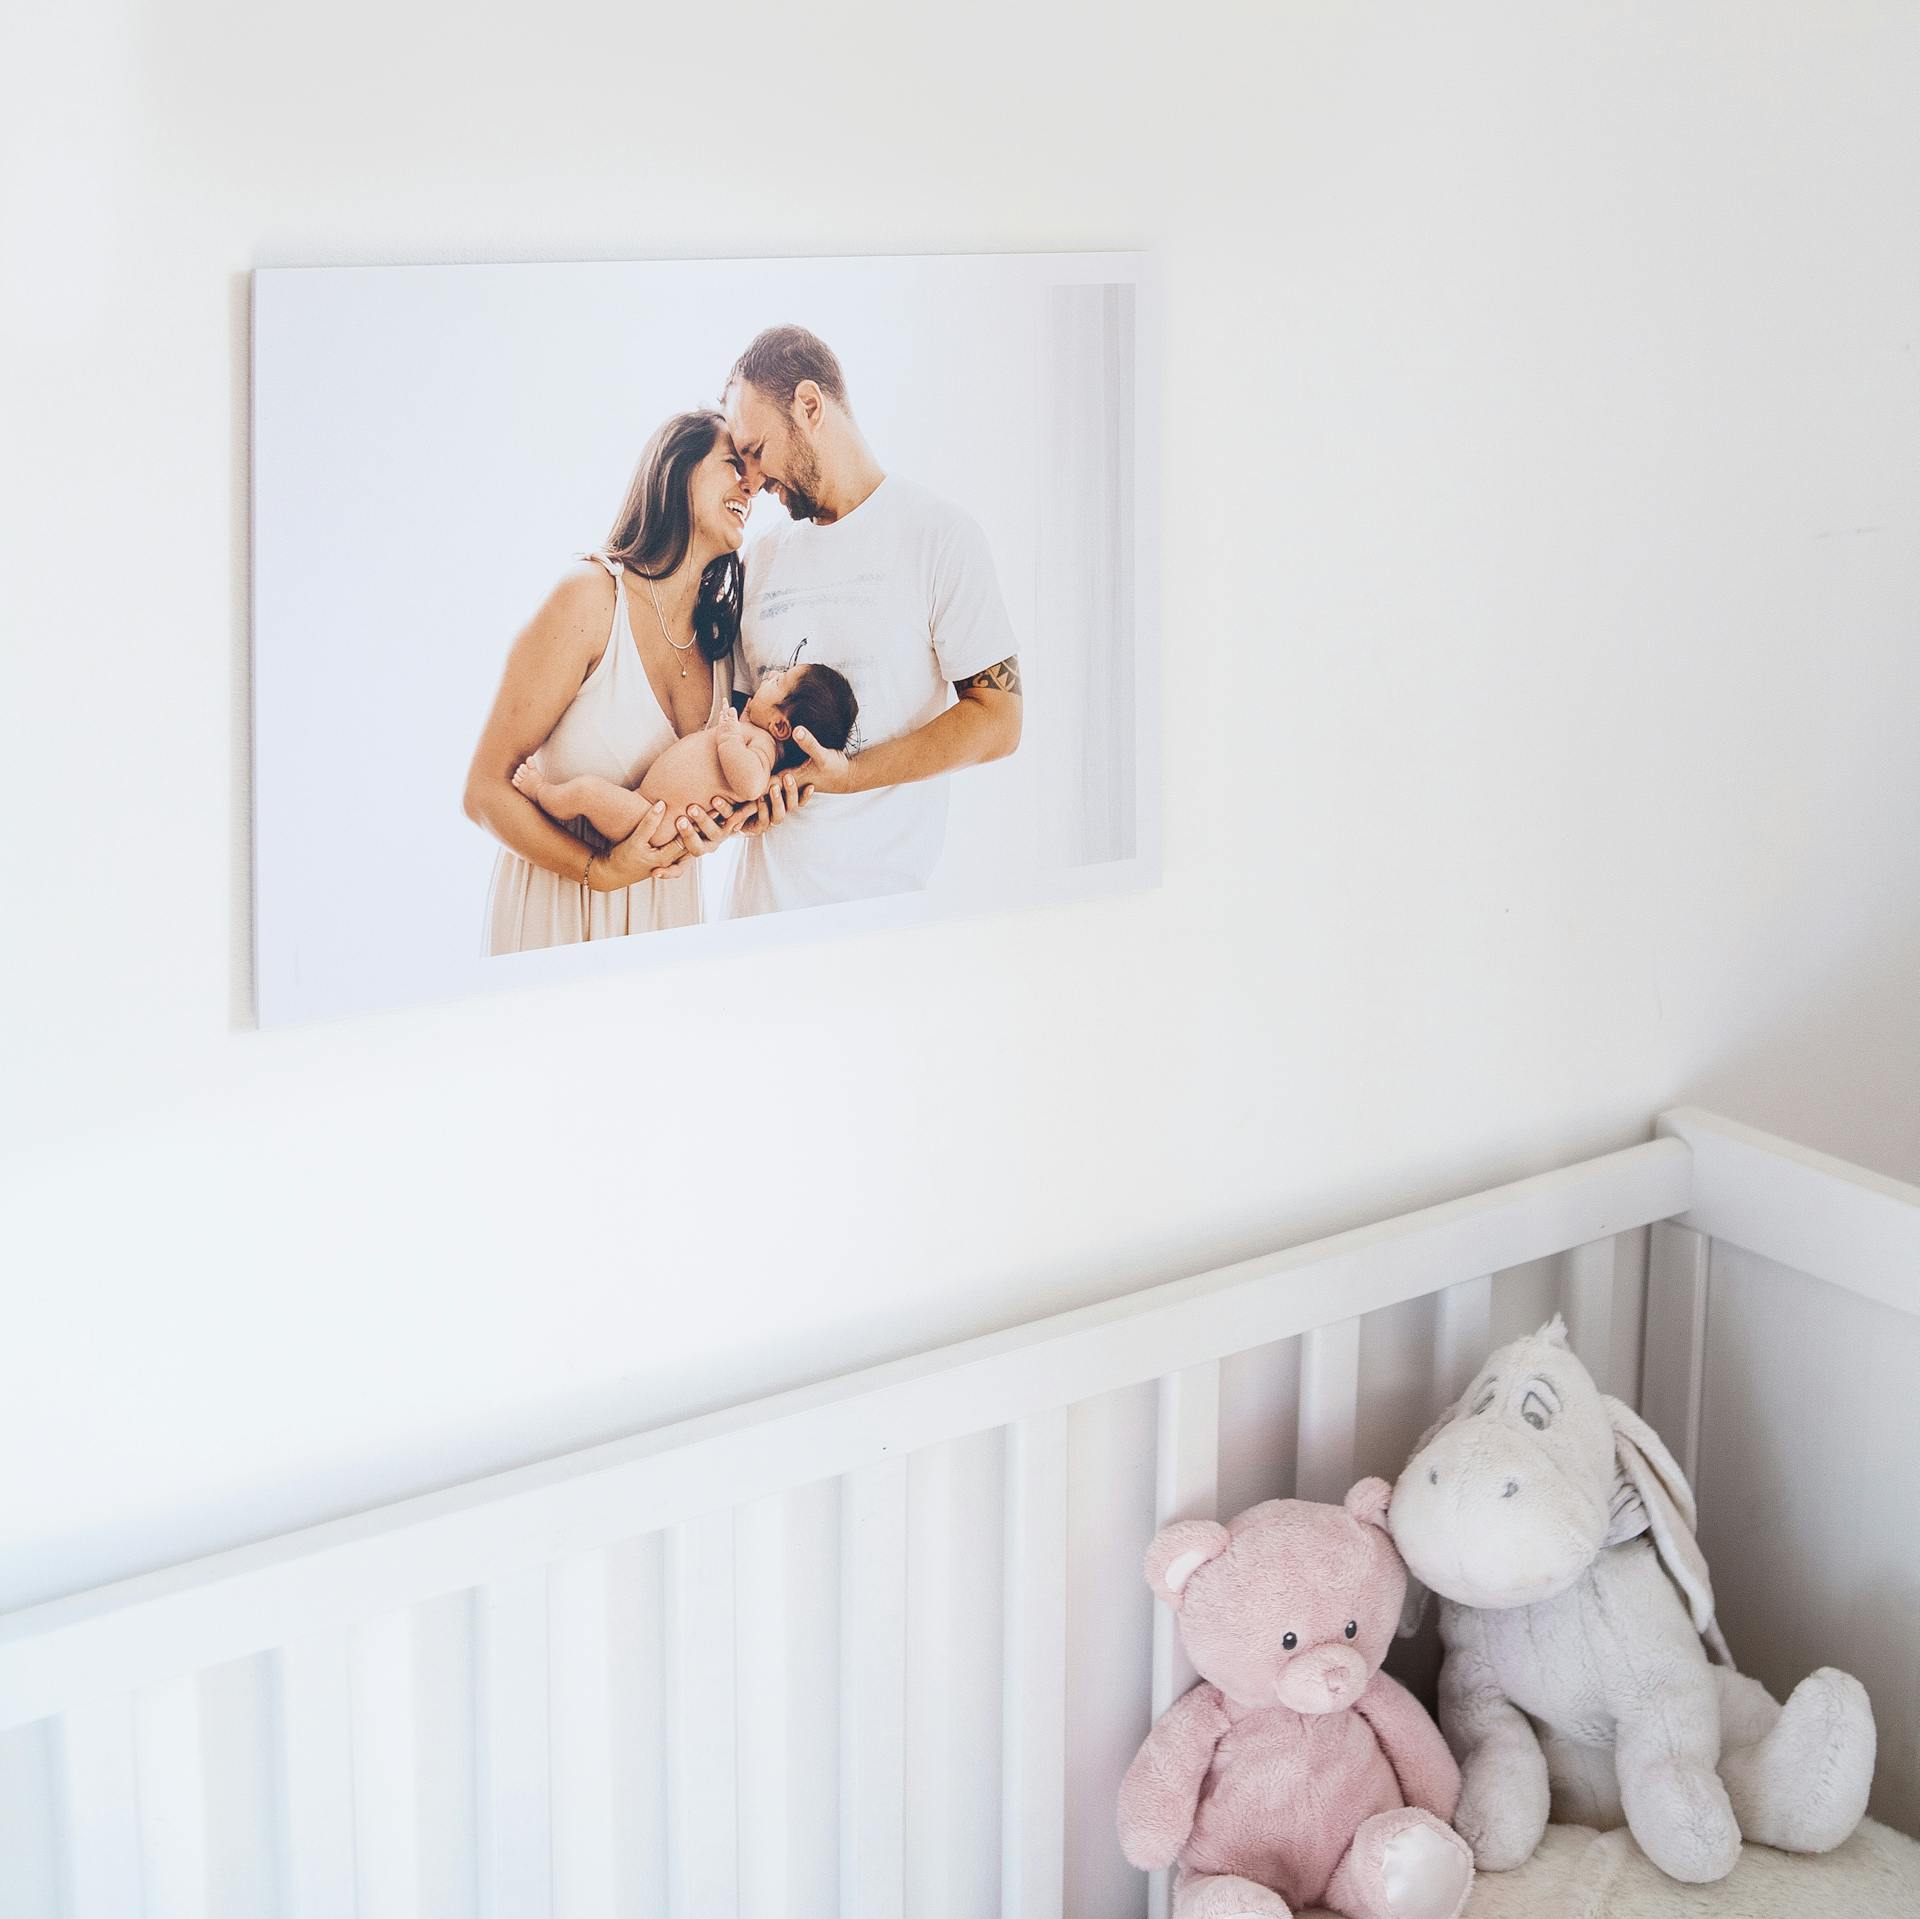 Une photo d'un couple avec leur nouveau-né accrochée dans une chambre | Source : Pexels